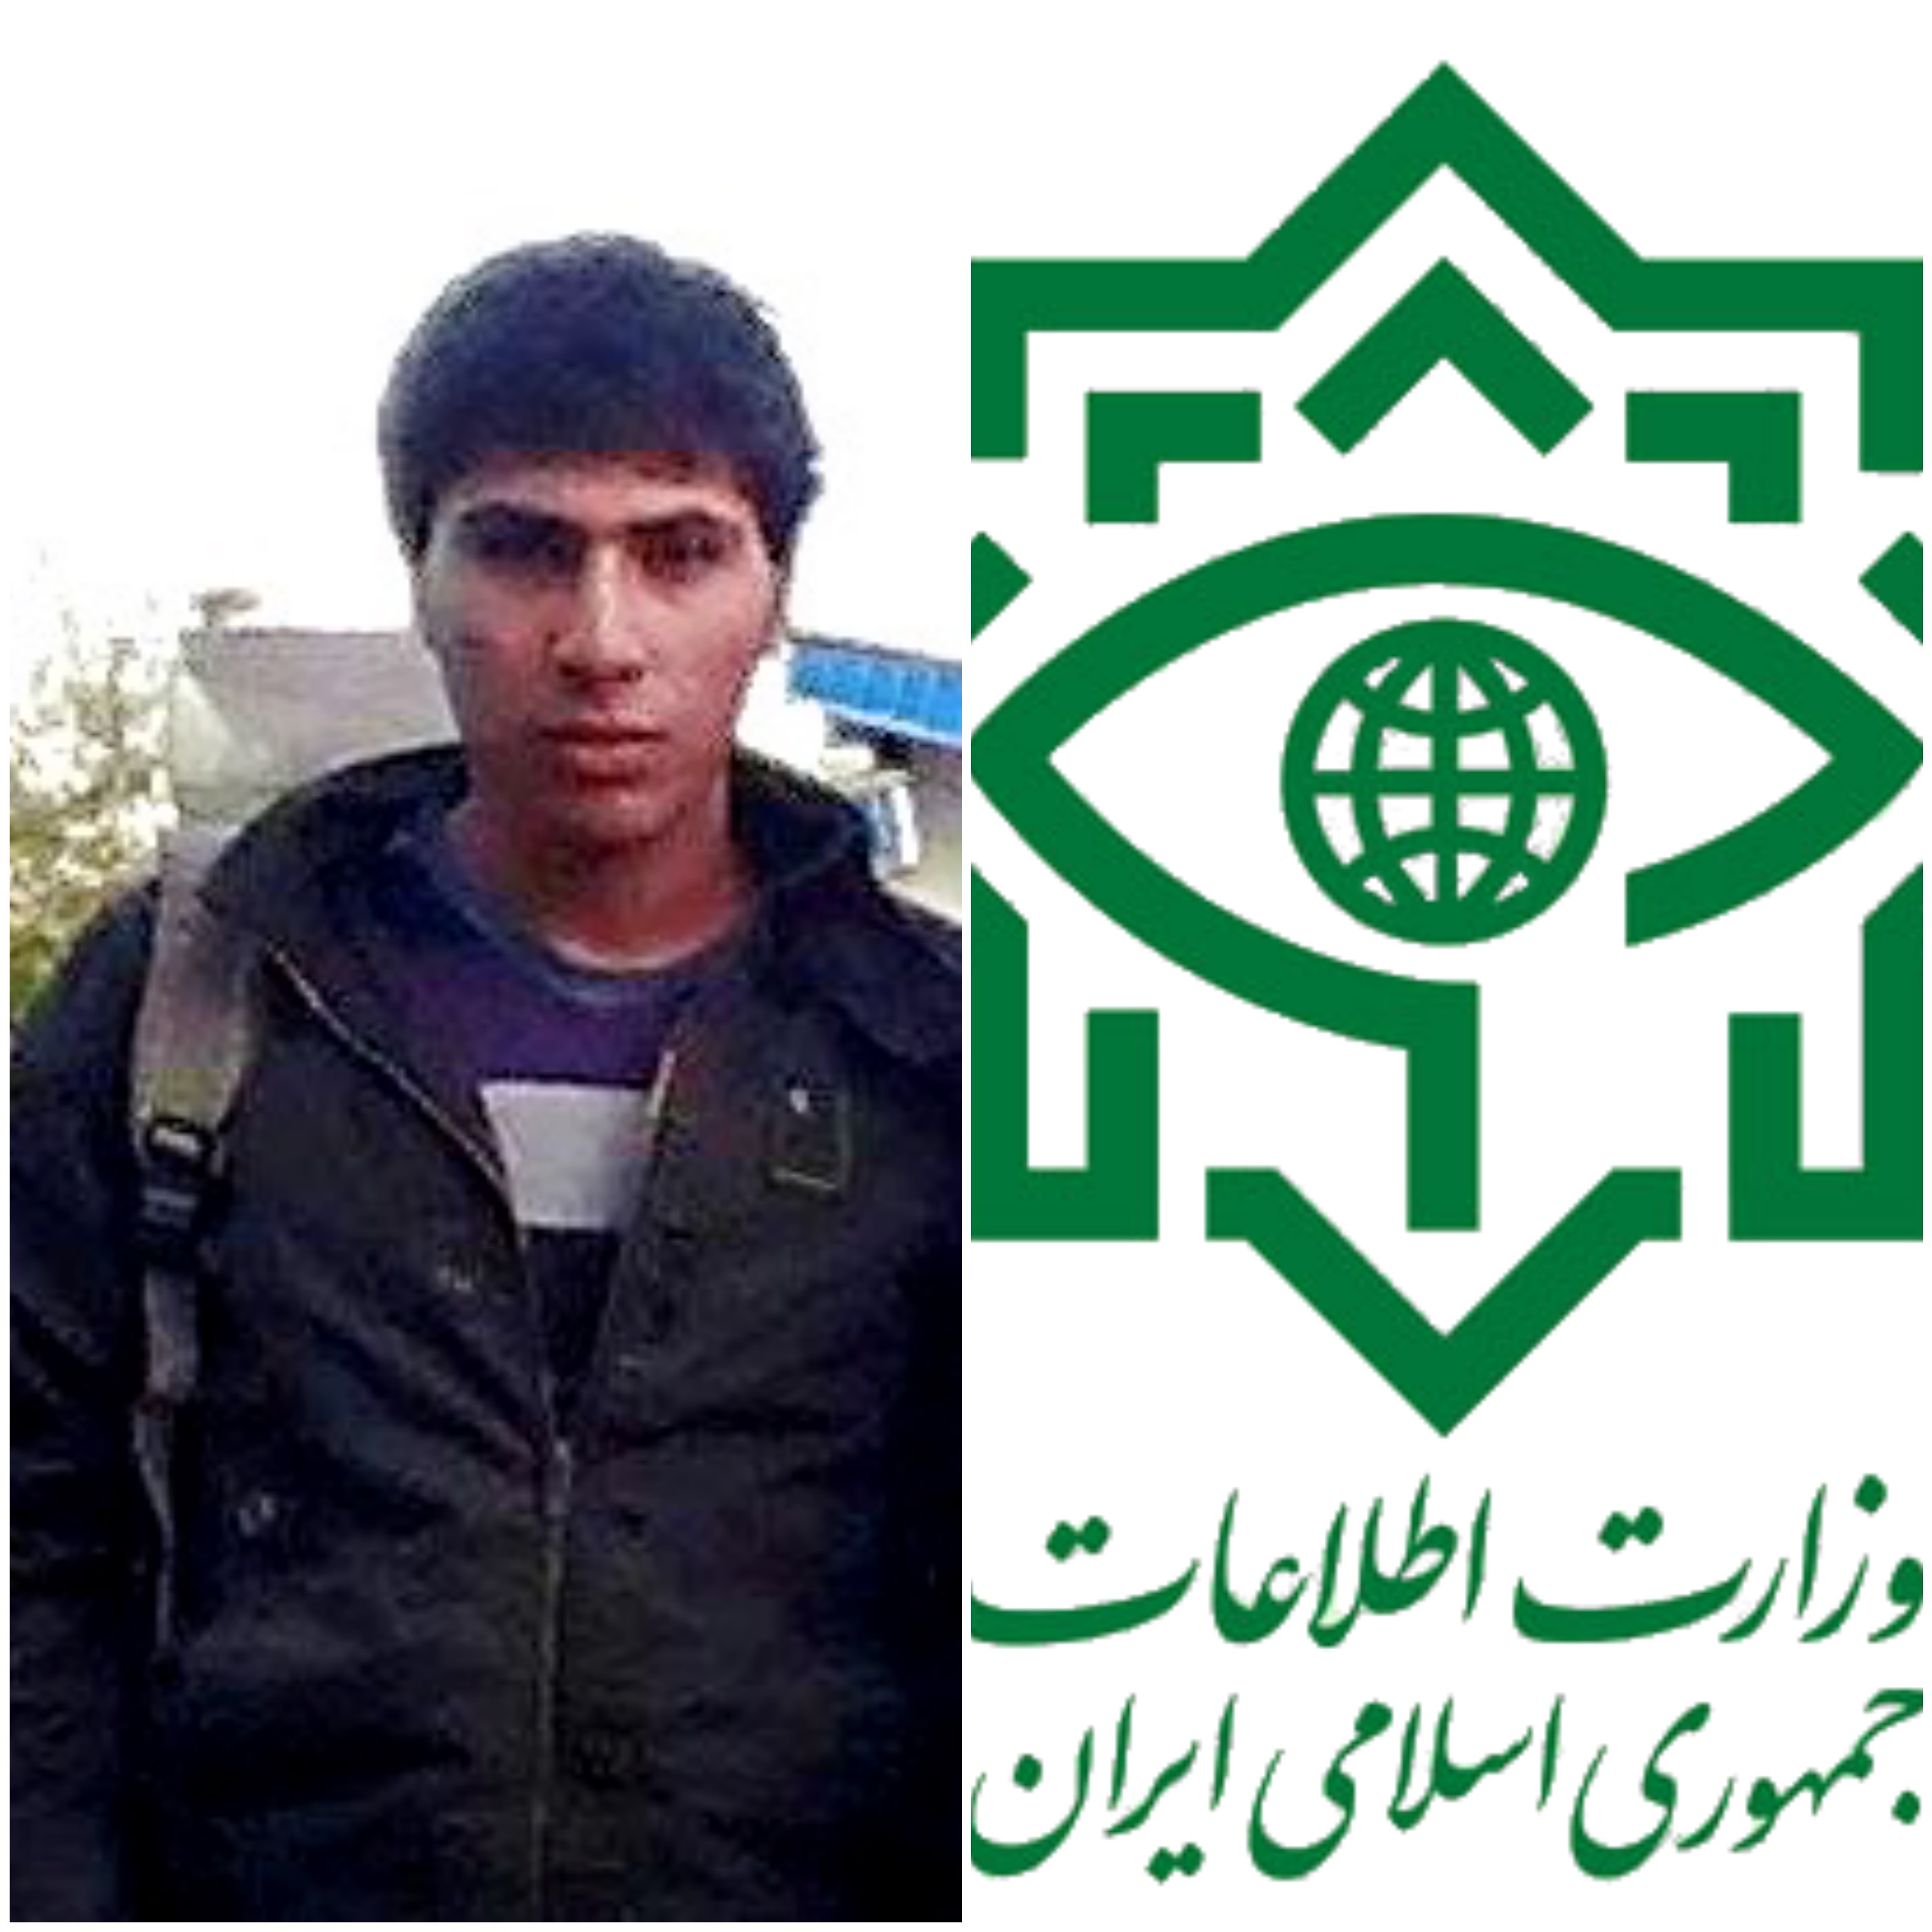 بازداشت یک شهروند کرد در مهاباد